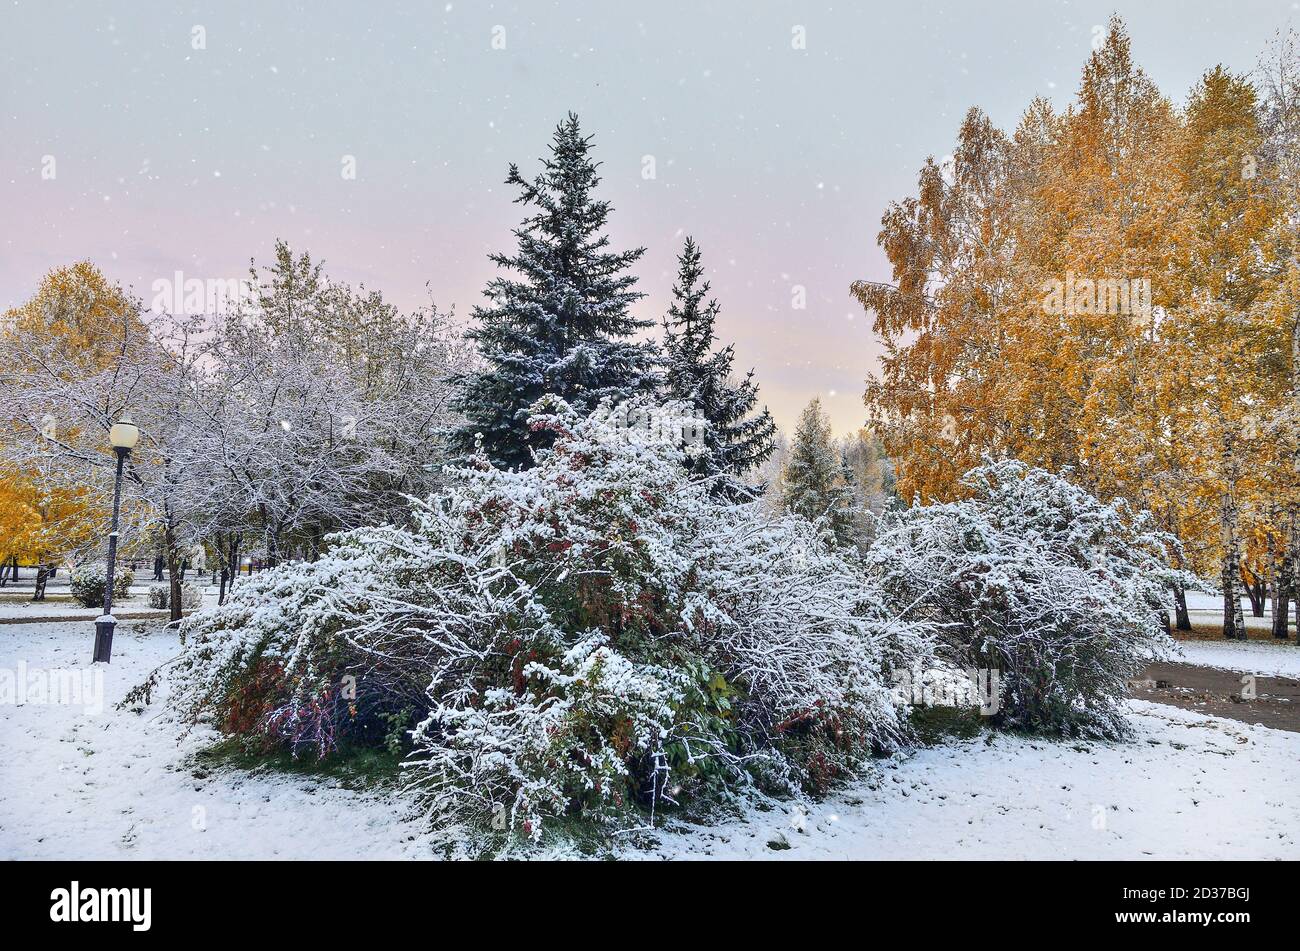 Première chute de neige dans le parc municipal d'automne. La neige blanche et moelleuse couvrait le feuillage des arbres dorés, des buissons et des spruces verts. Changement de saison - conte de fées de l'hiver Banque D'Images